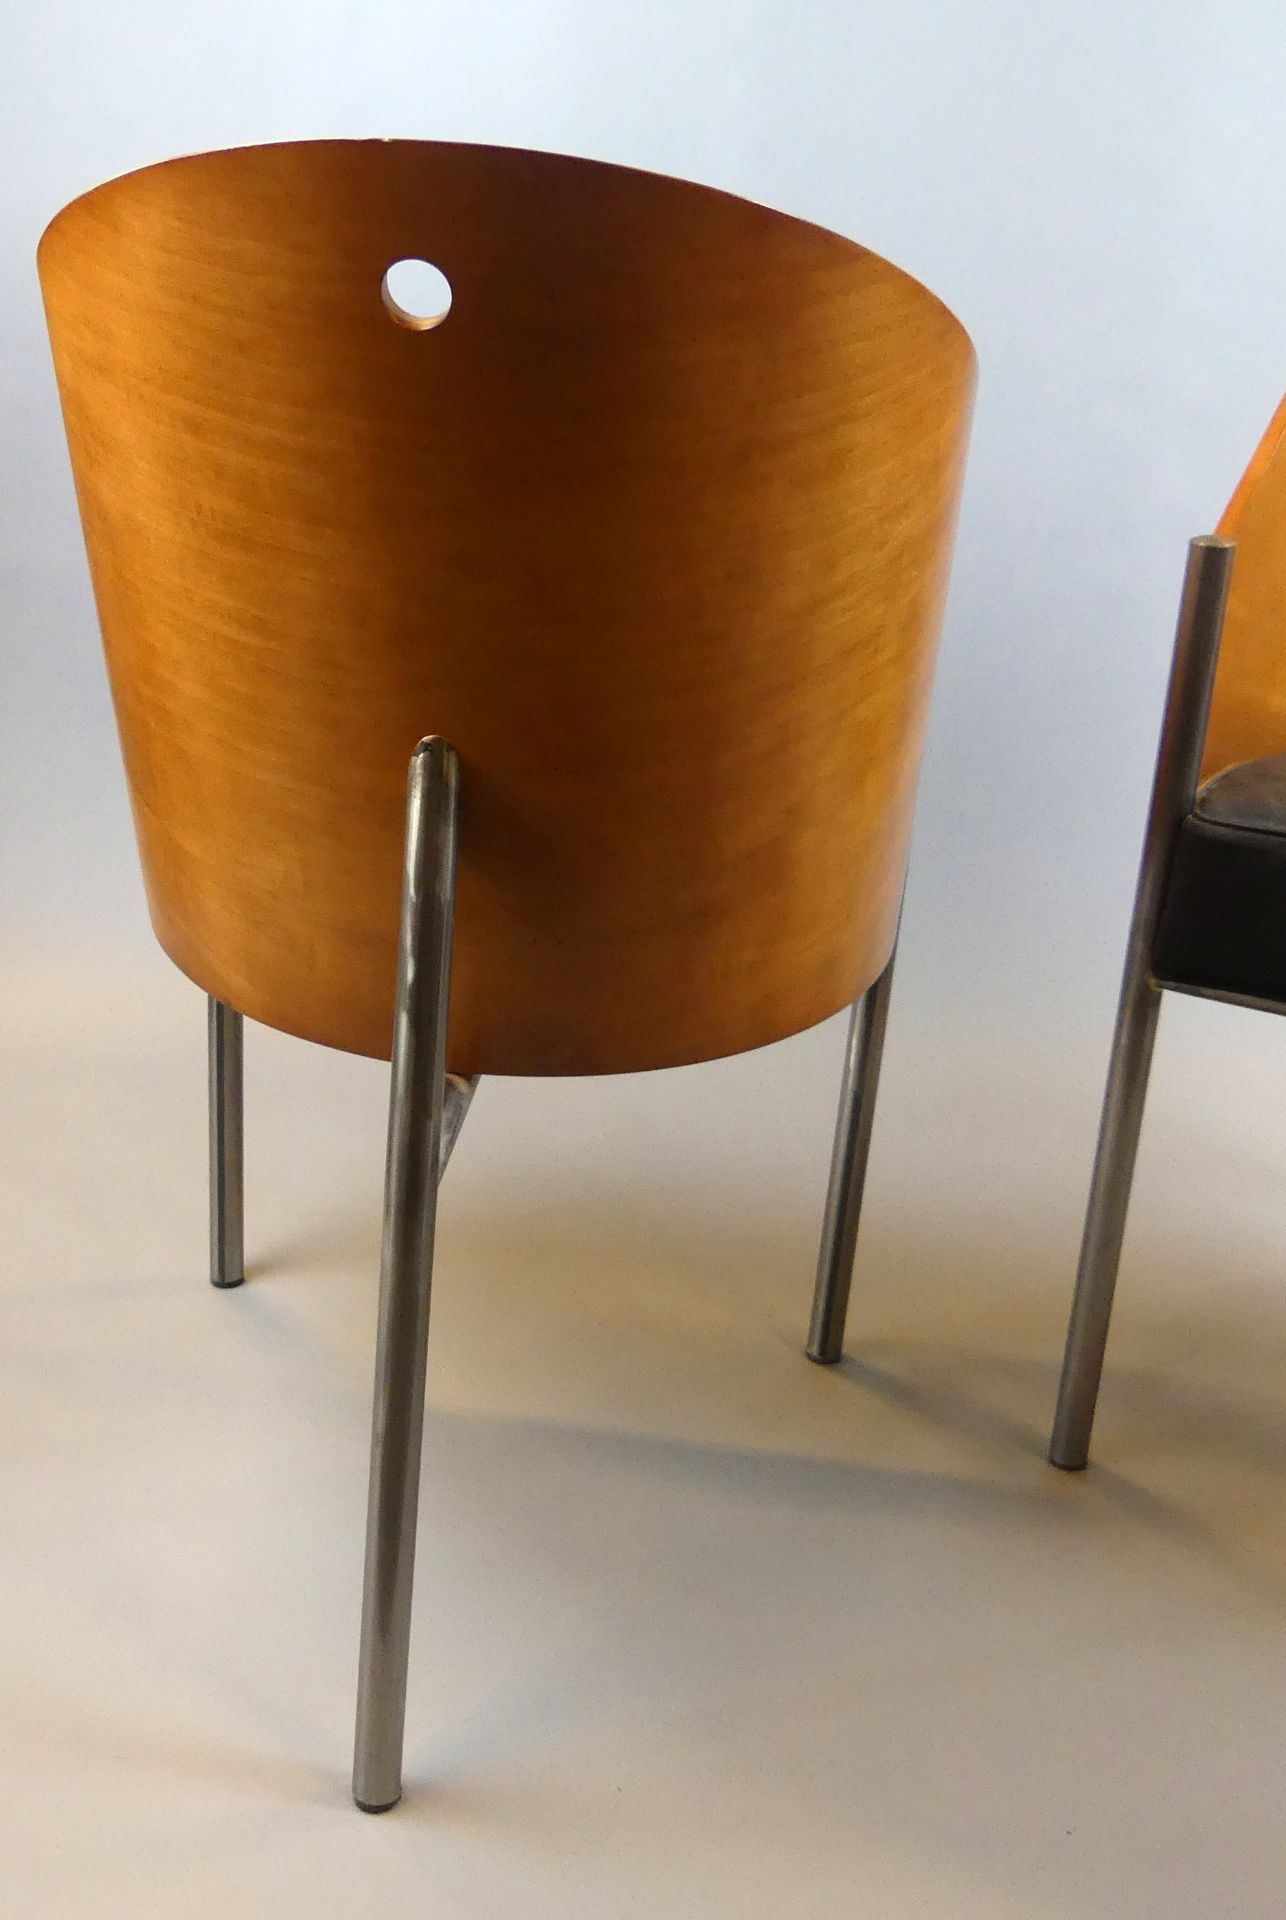 Paar Philippe Starck Stühle, "Costes-Chair" für Driade, 90er Jahre, - Bild 5 aus 5